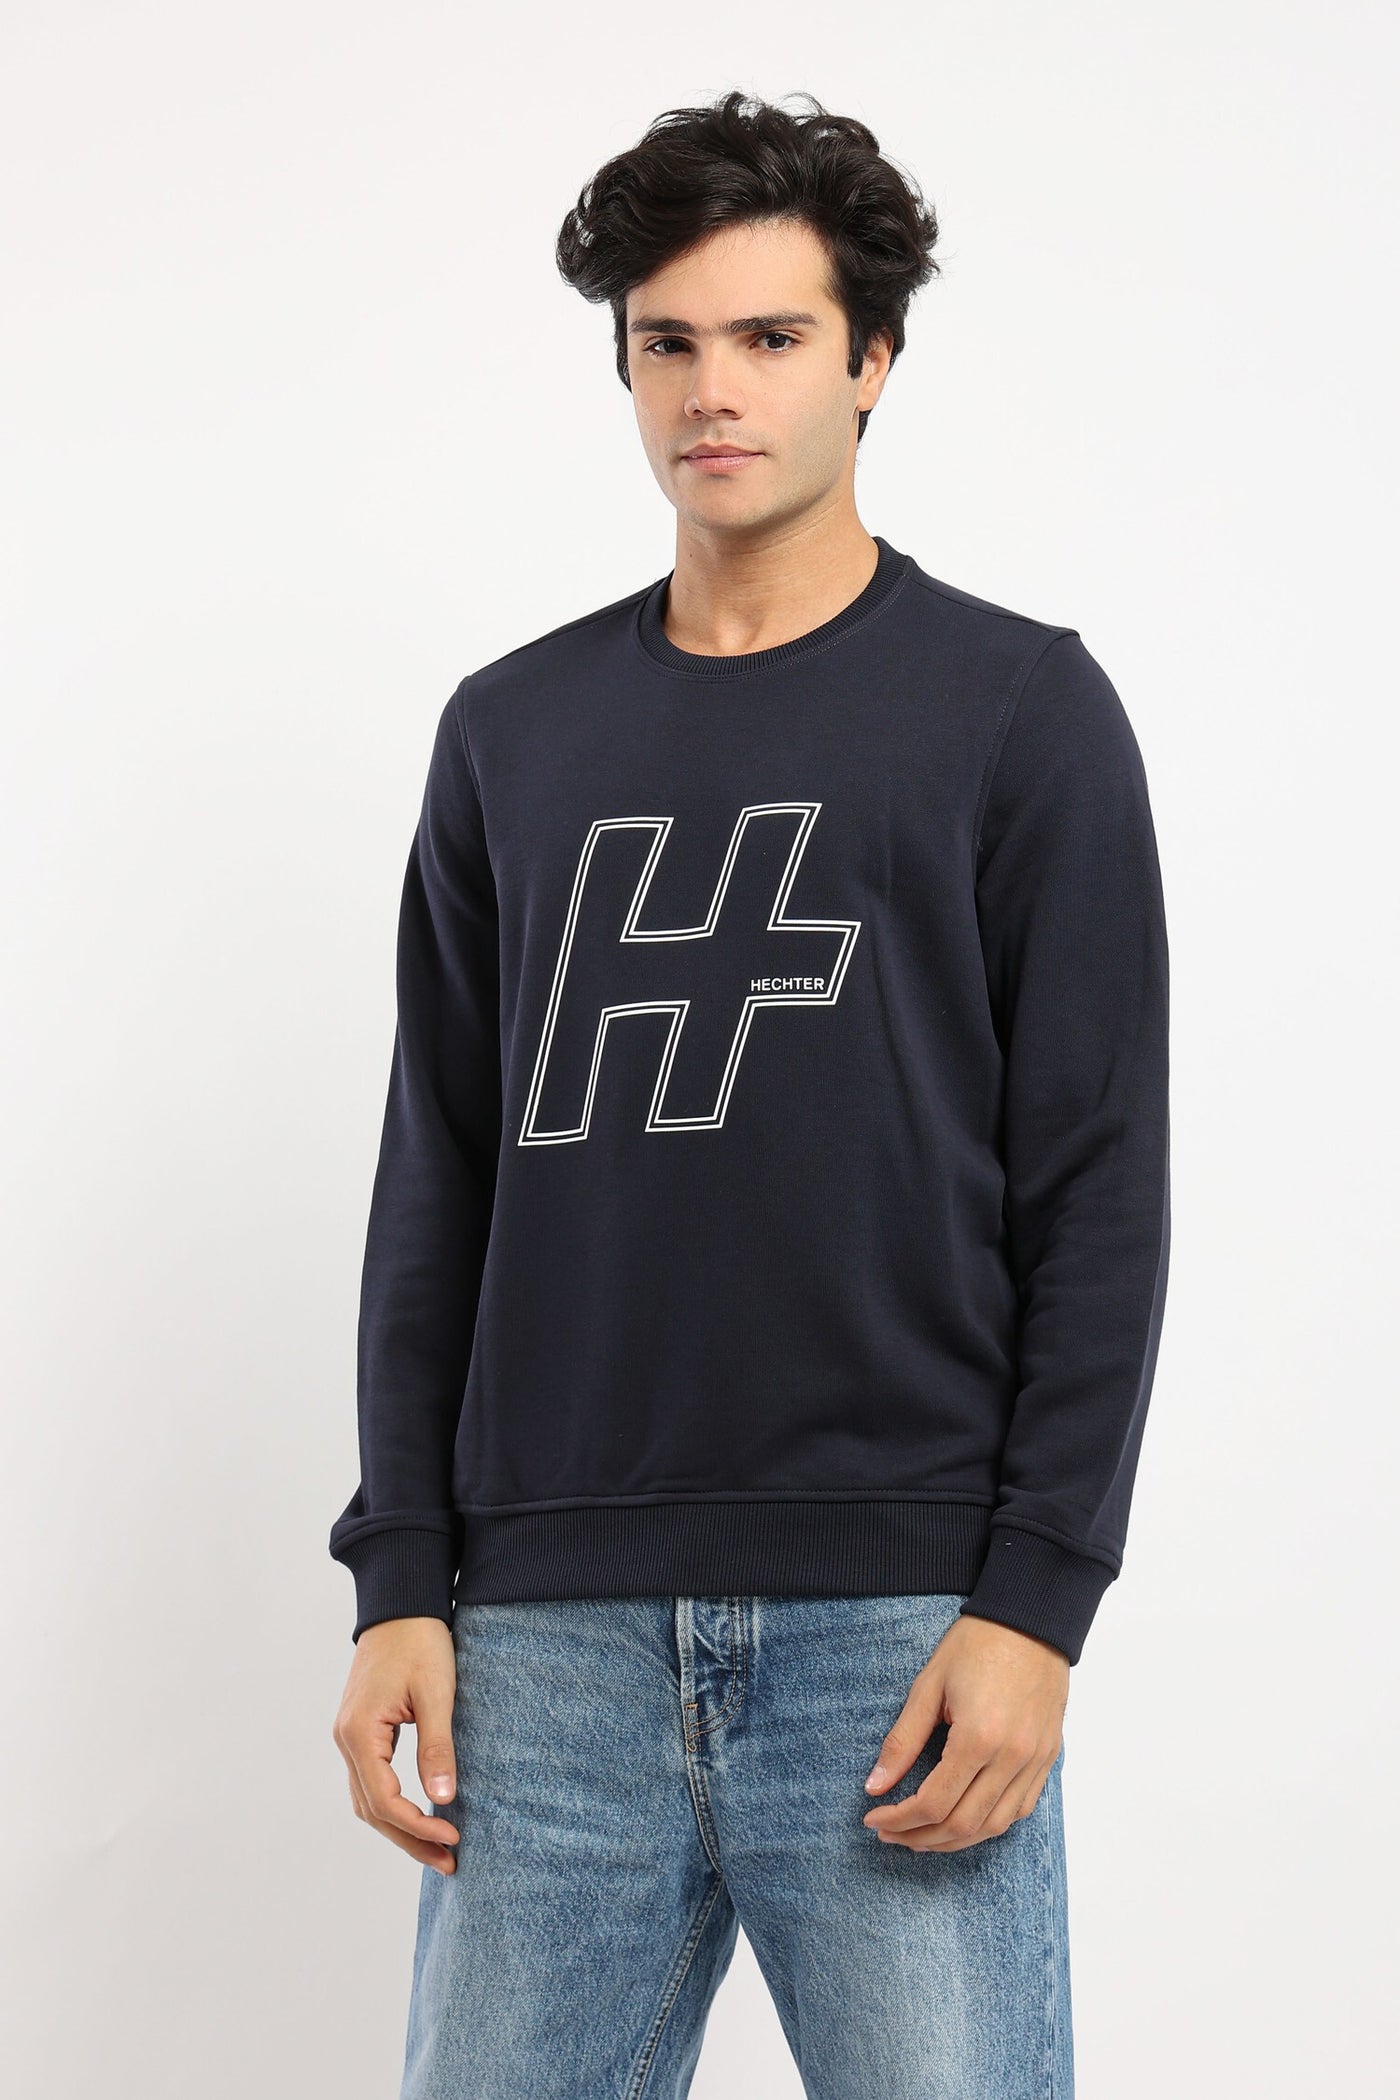 Sweatshirt - Front Print - Long Sleeves